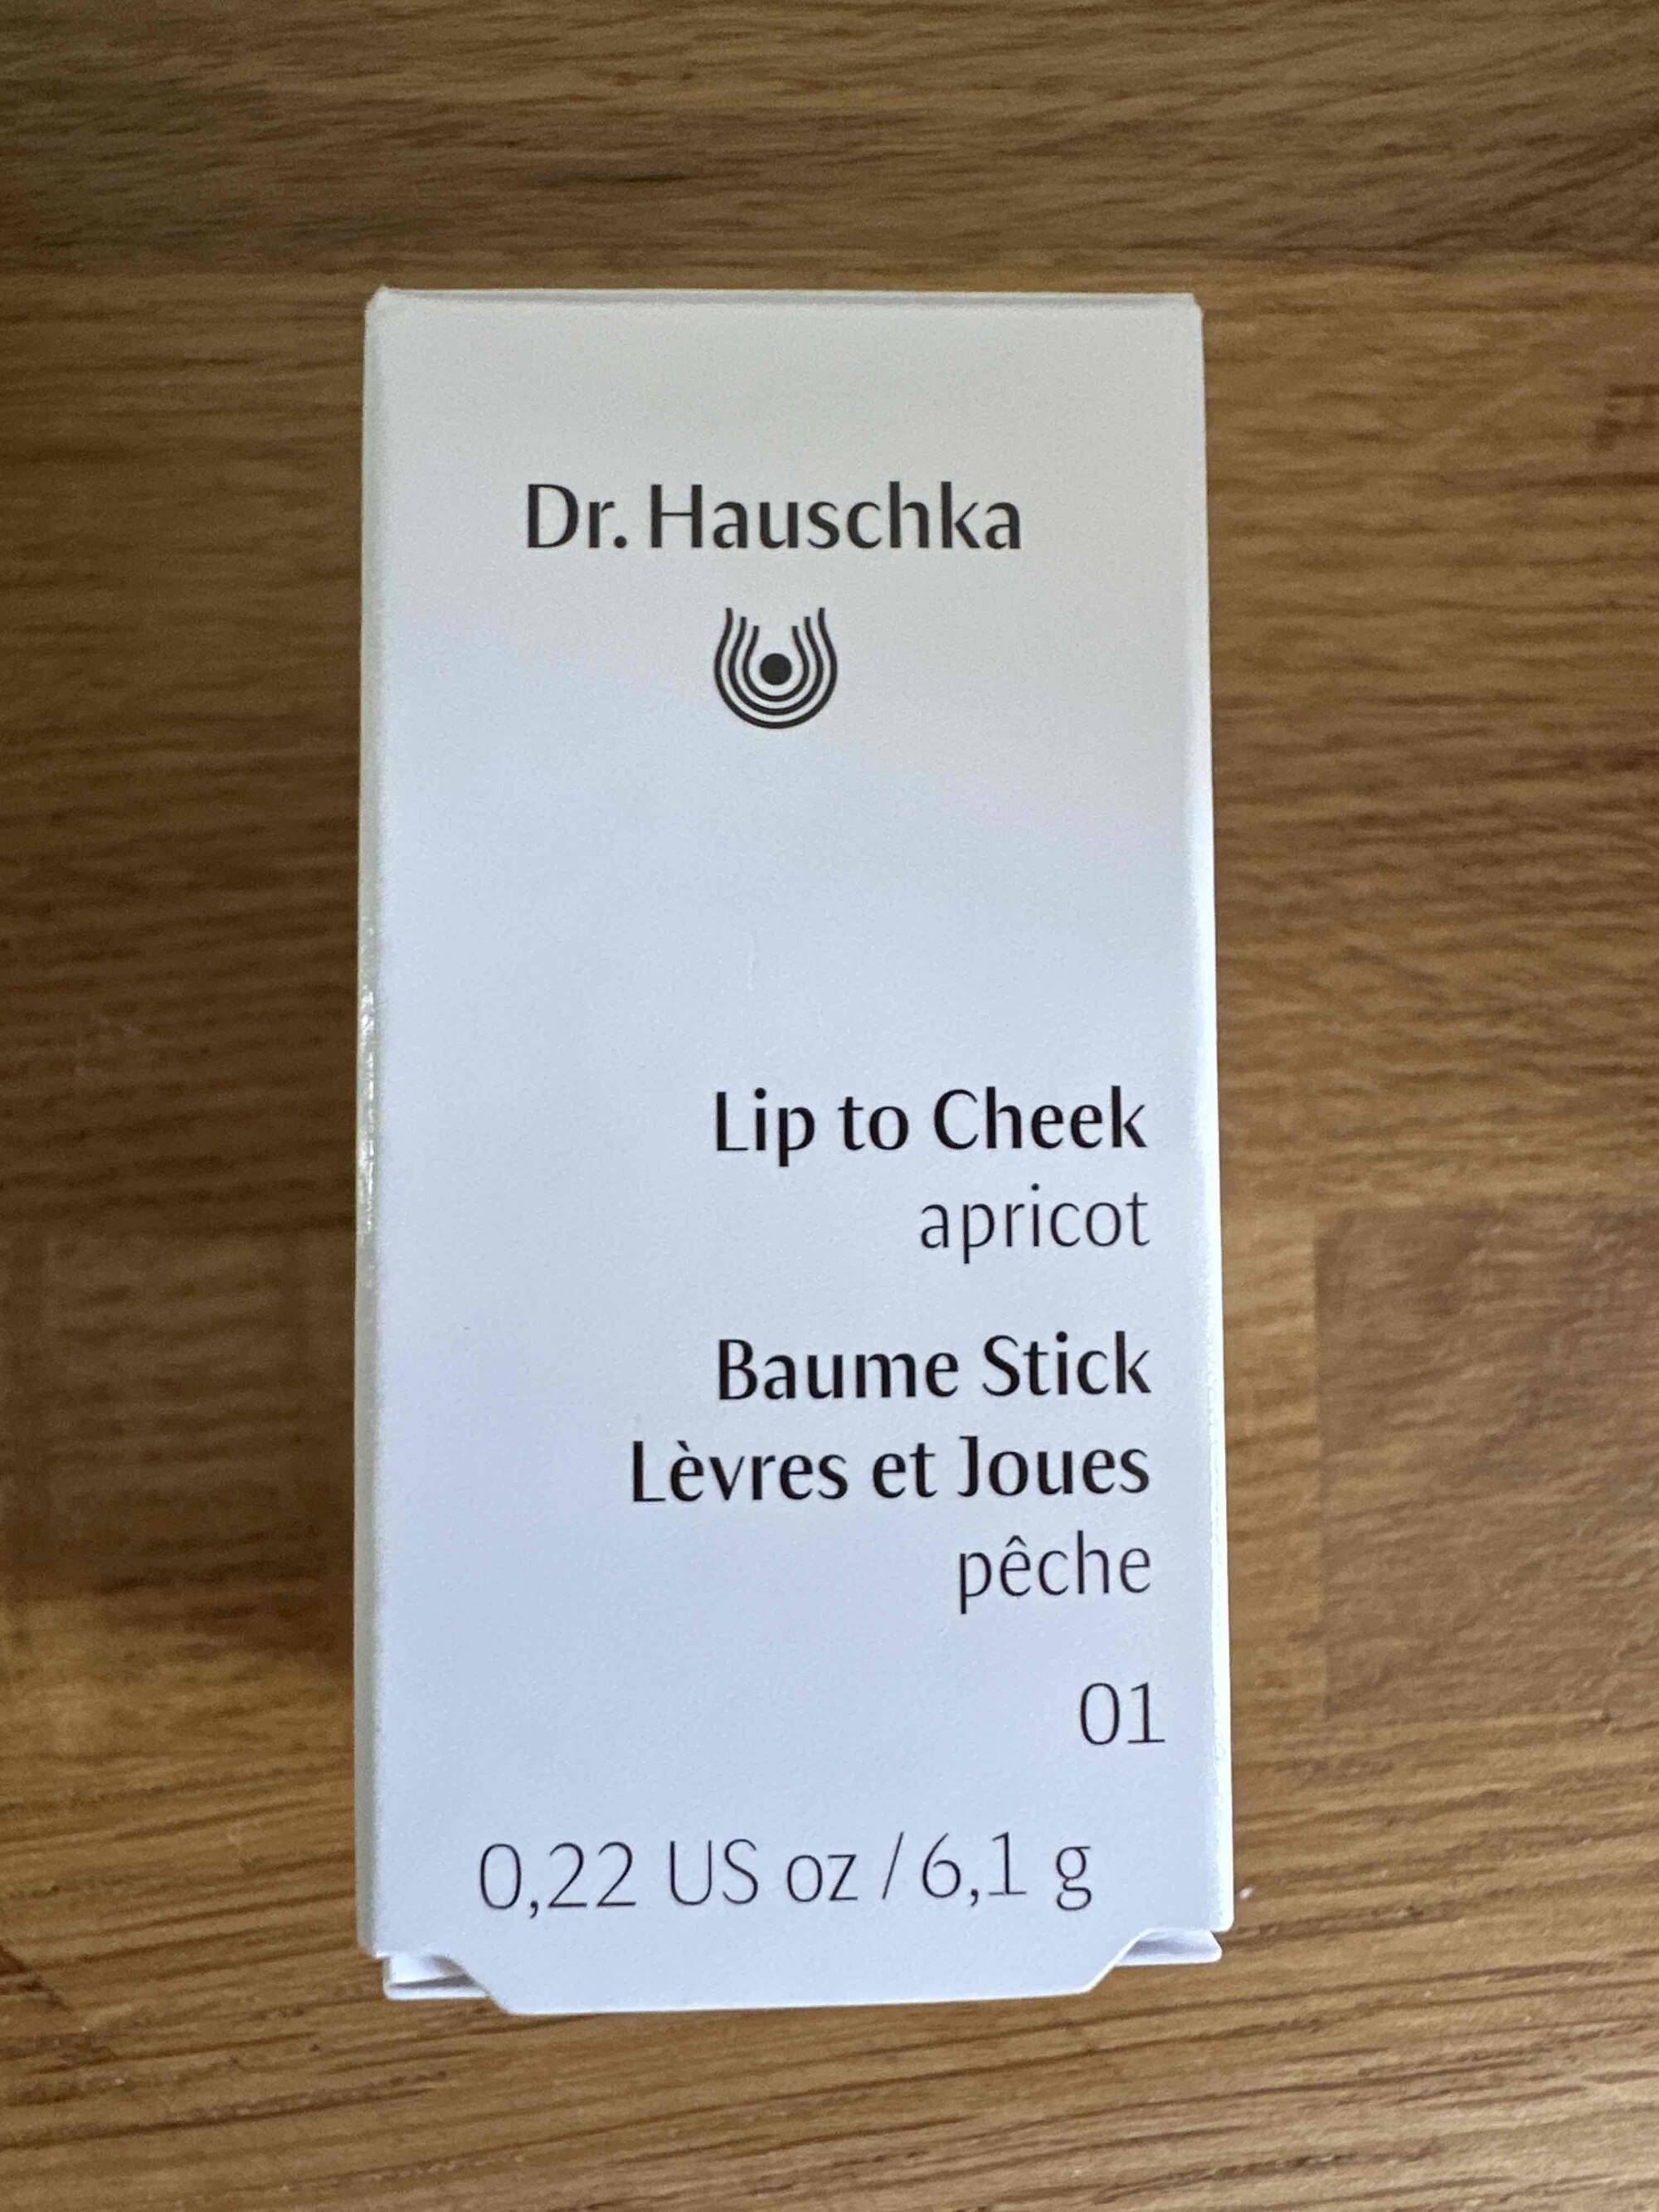 DR. HAUSCHKA - Baume stick  lèvres et joues pêche 01